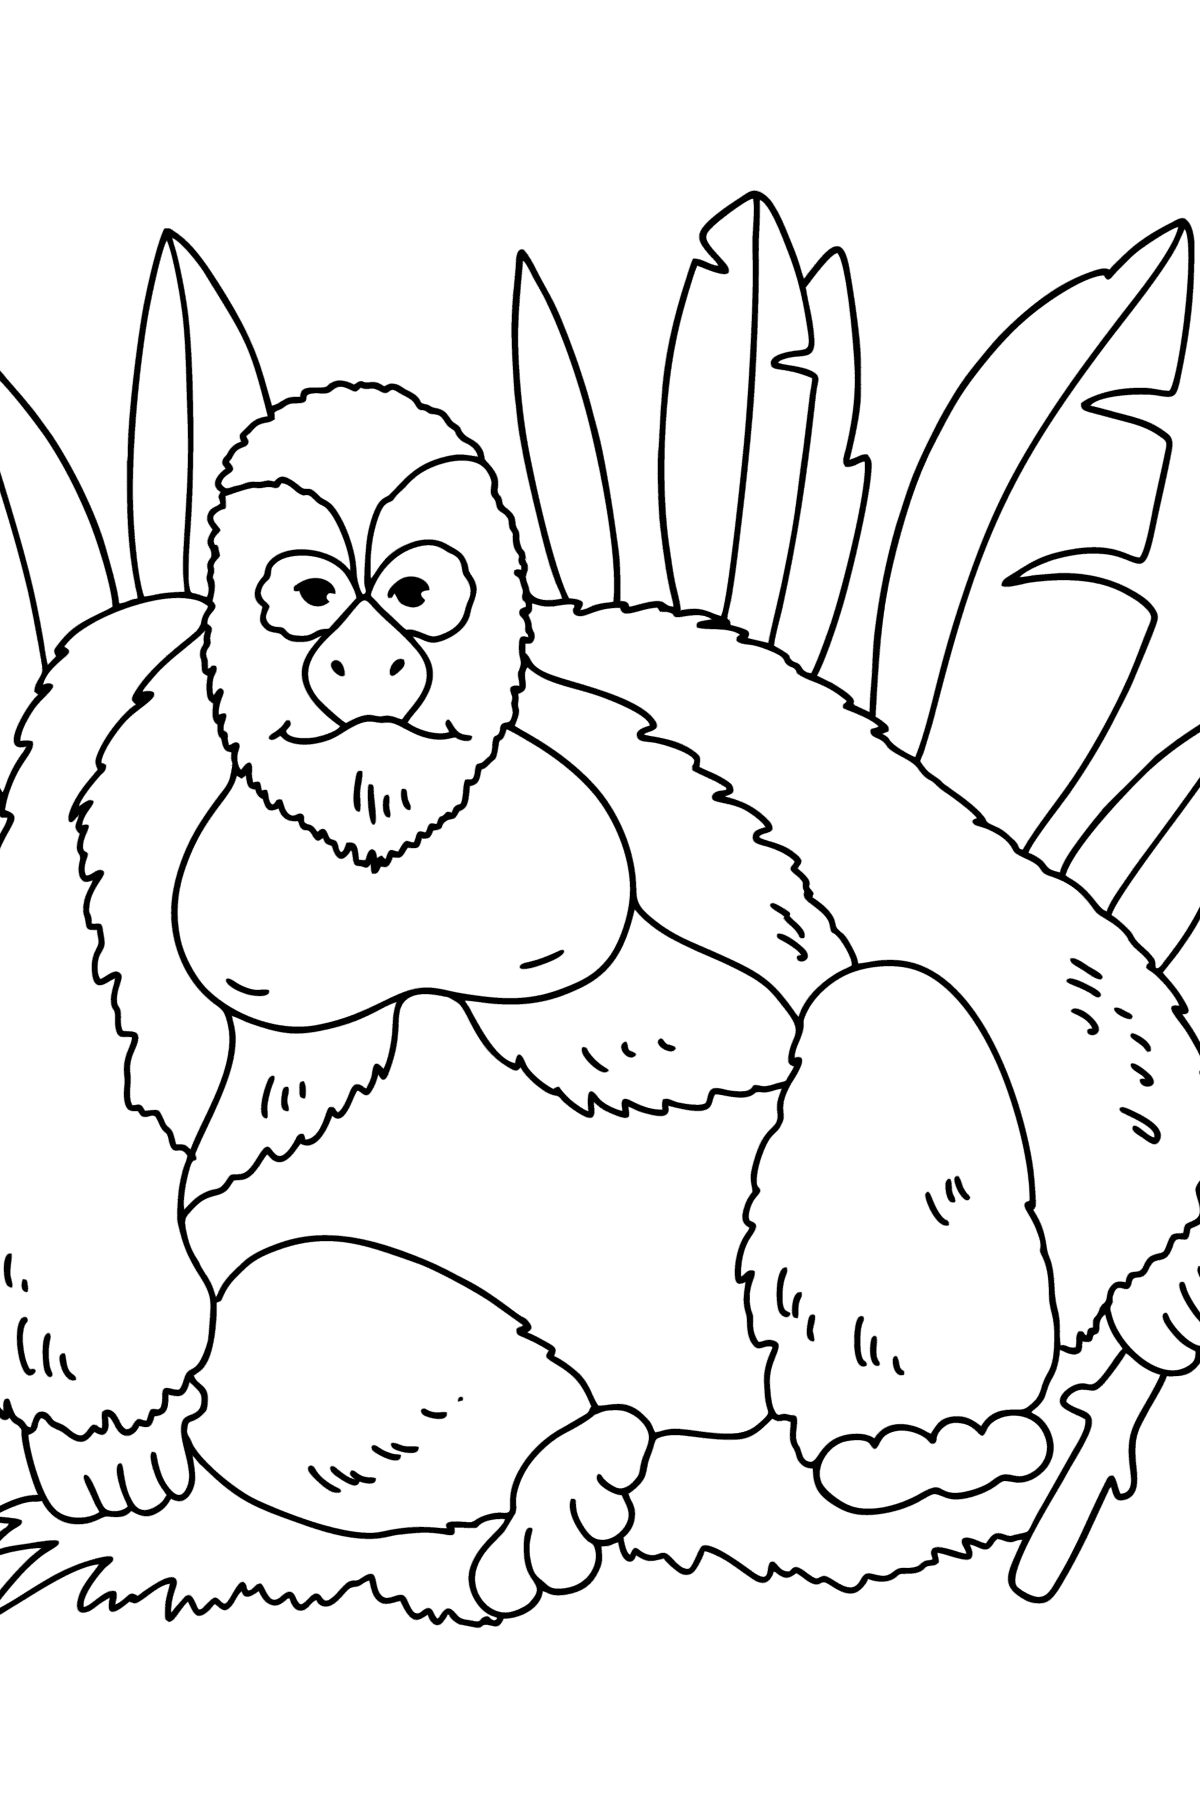 Disegno da colorare Gorilla - Disegni da colorare per bambini